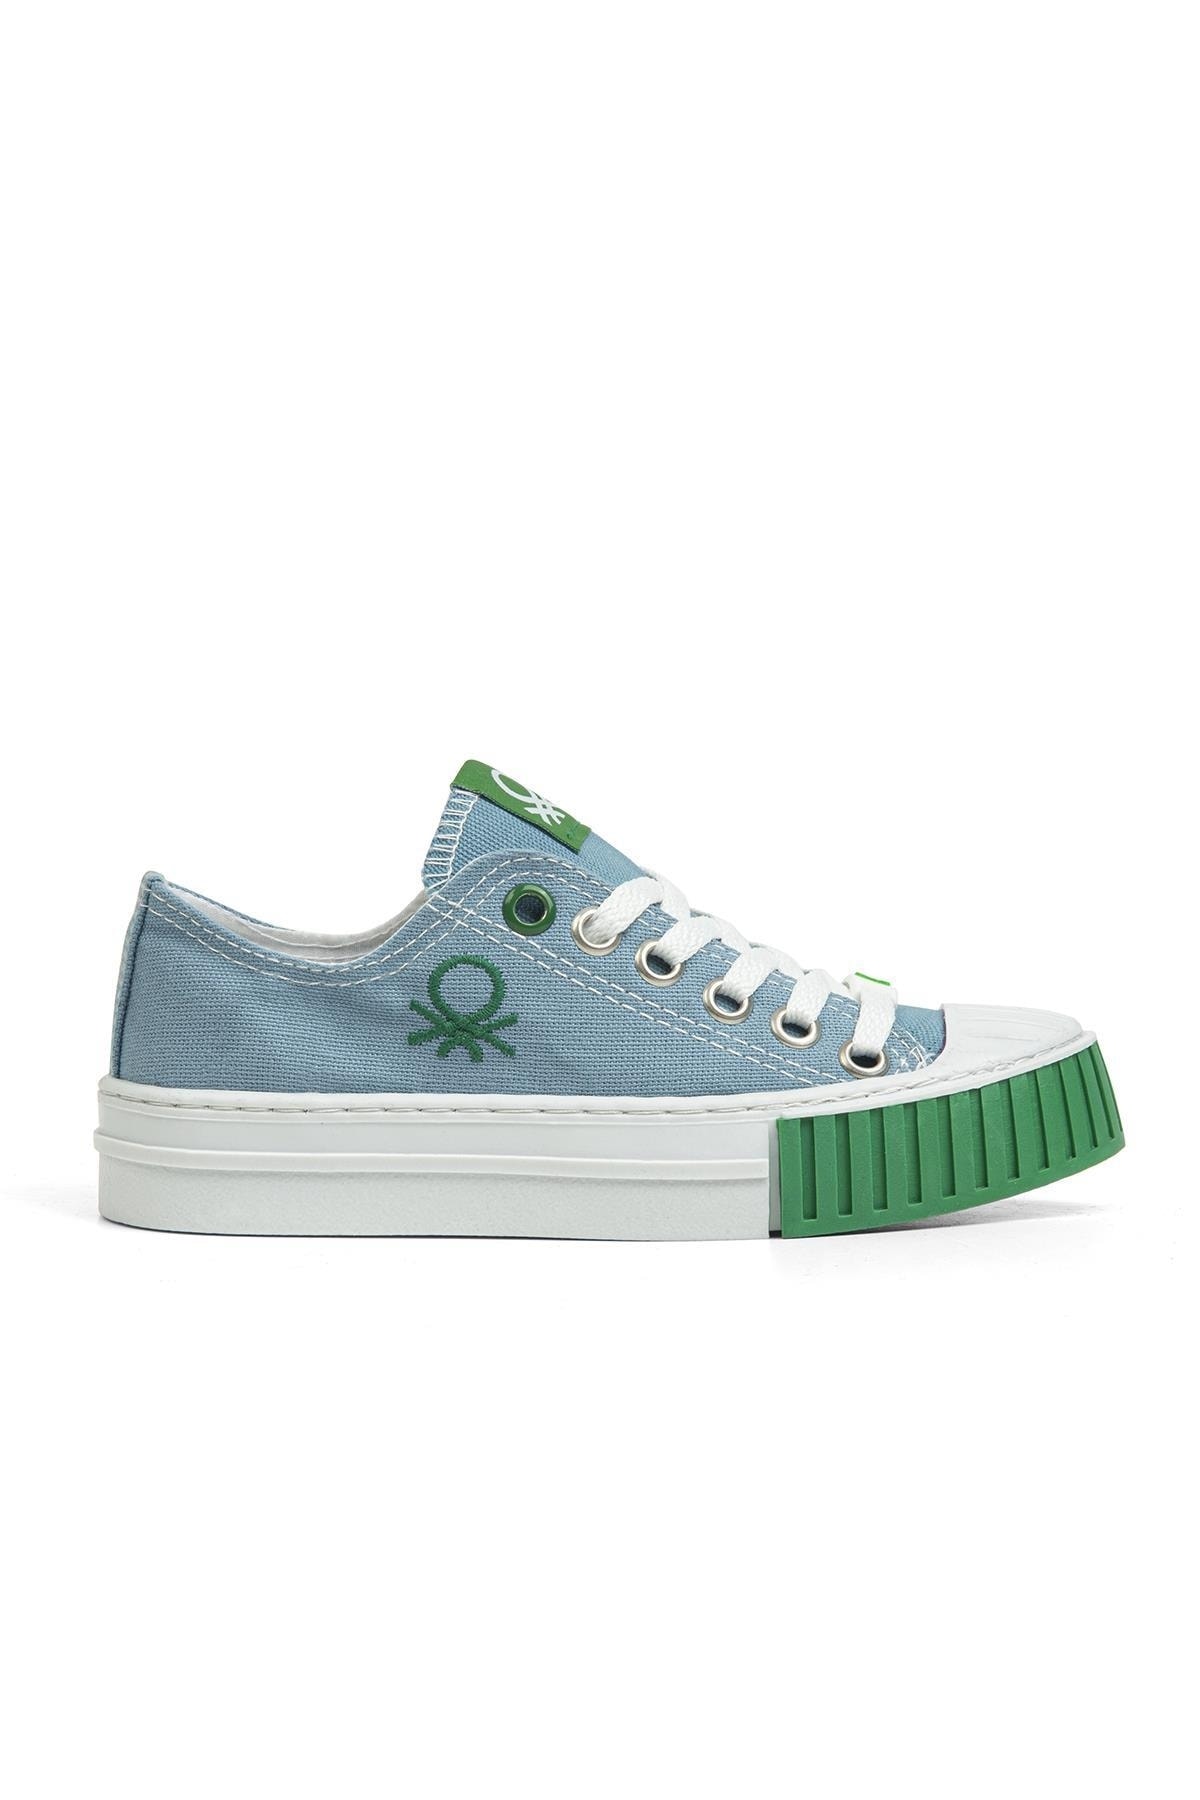 Benetton ® | Bn-30657 - 3114 Mavi - Çocuk Spor Ayakkabı